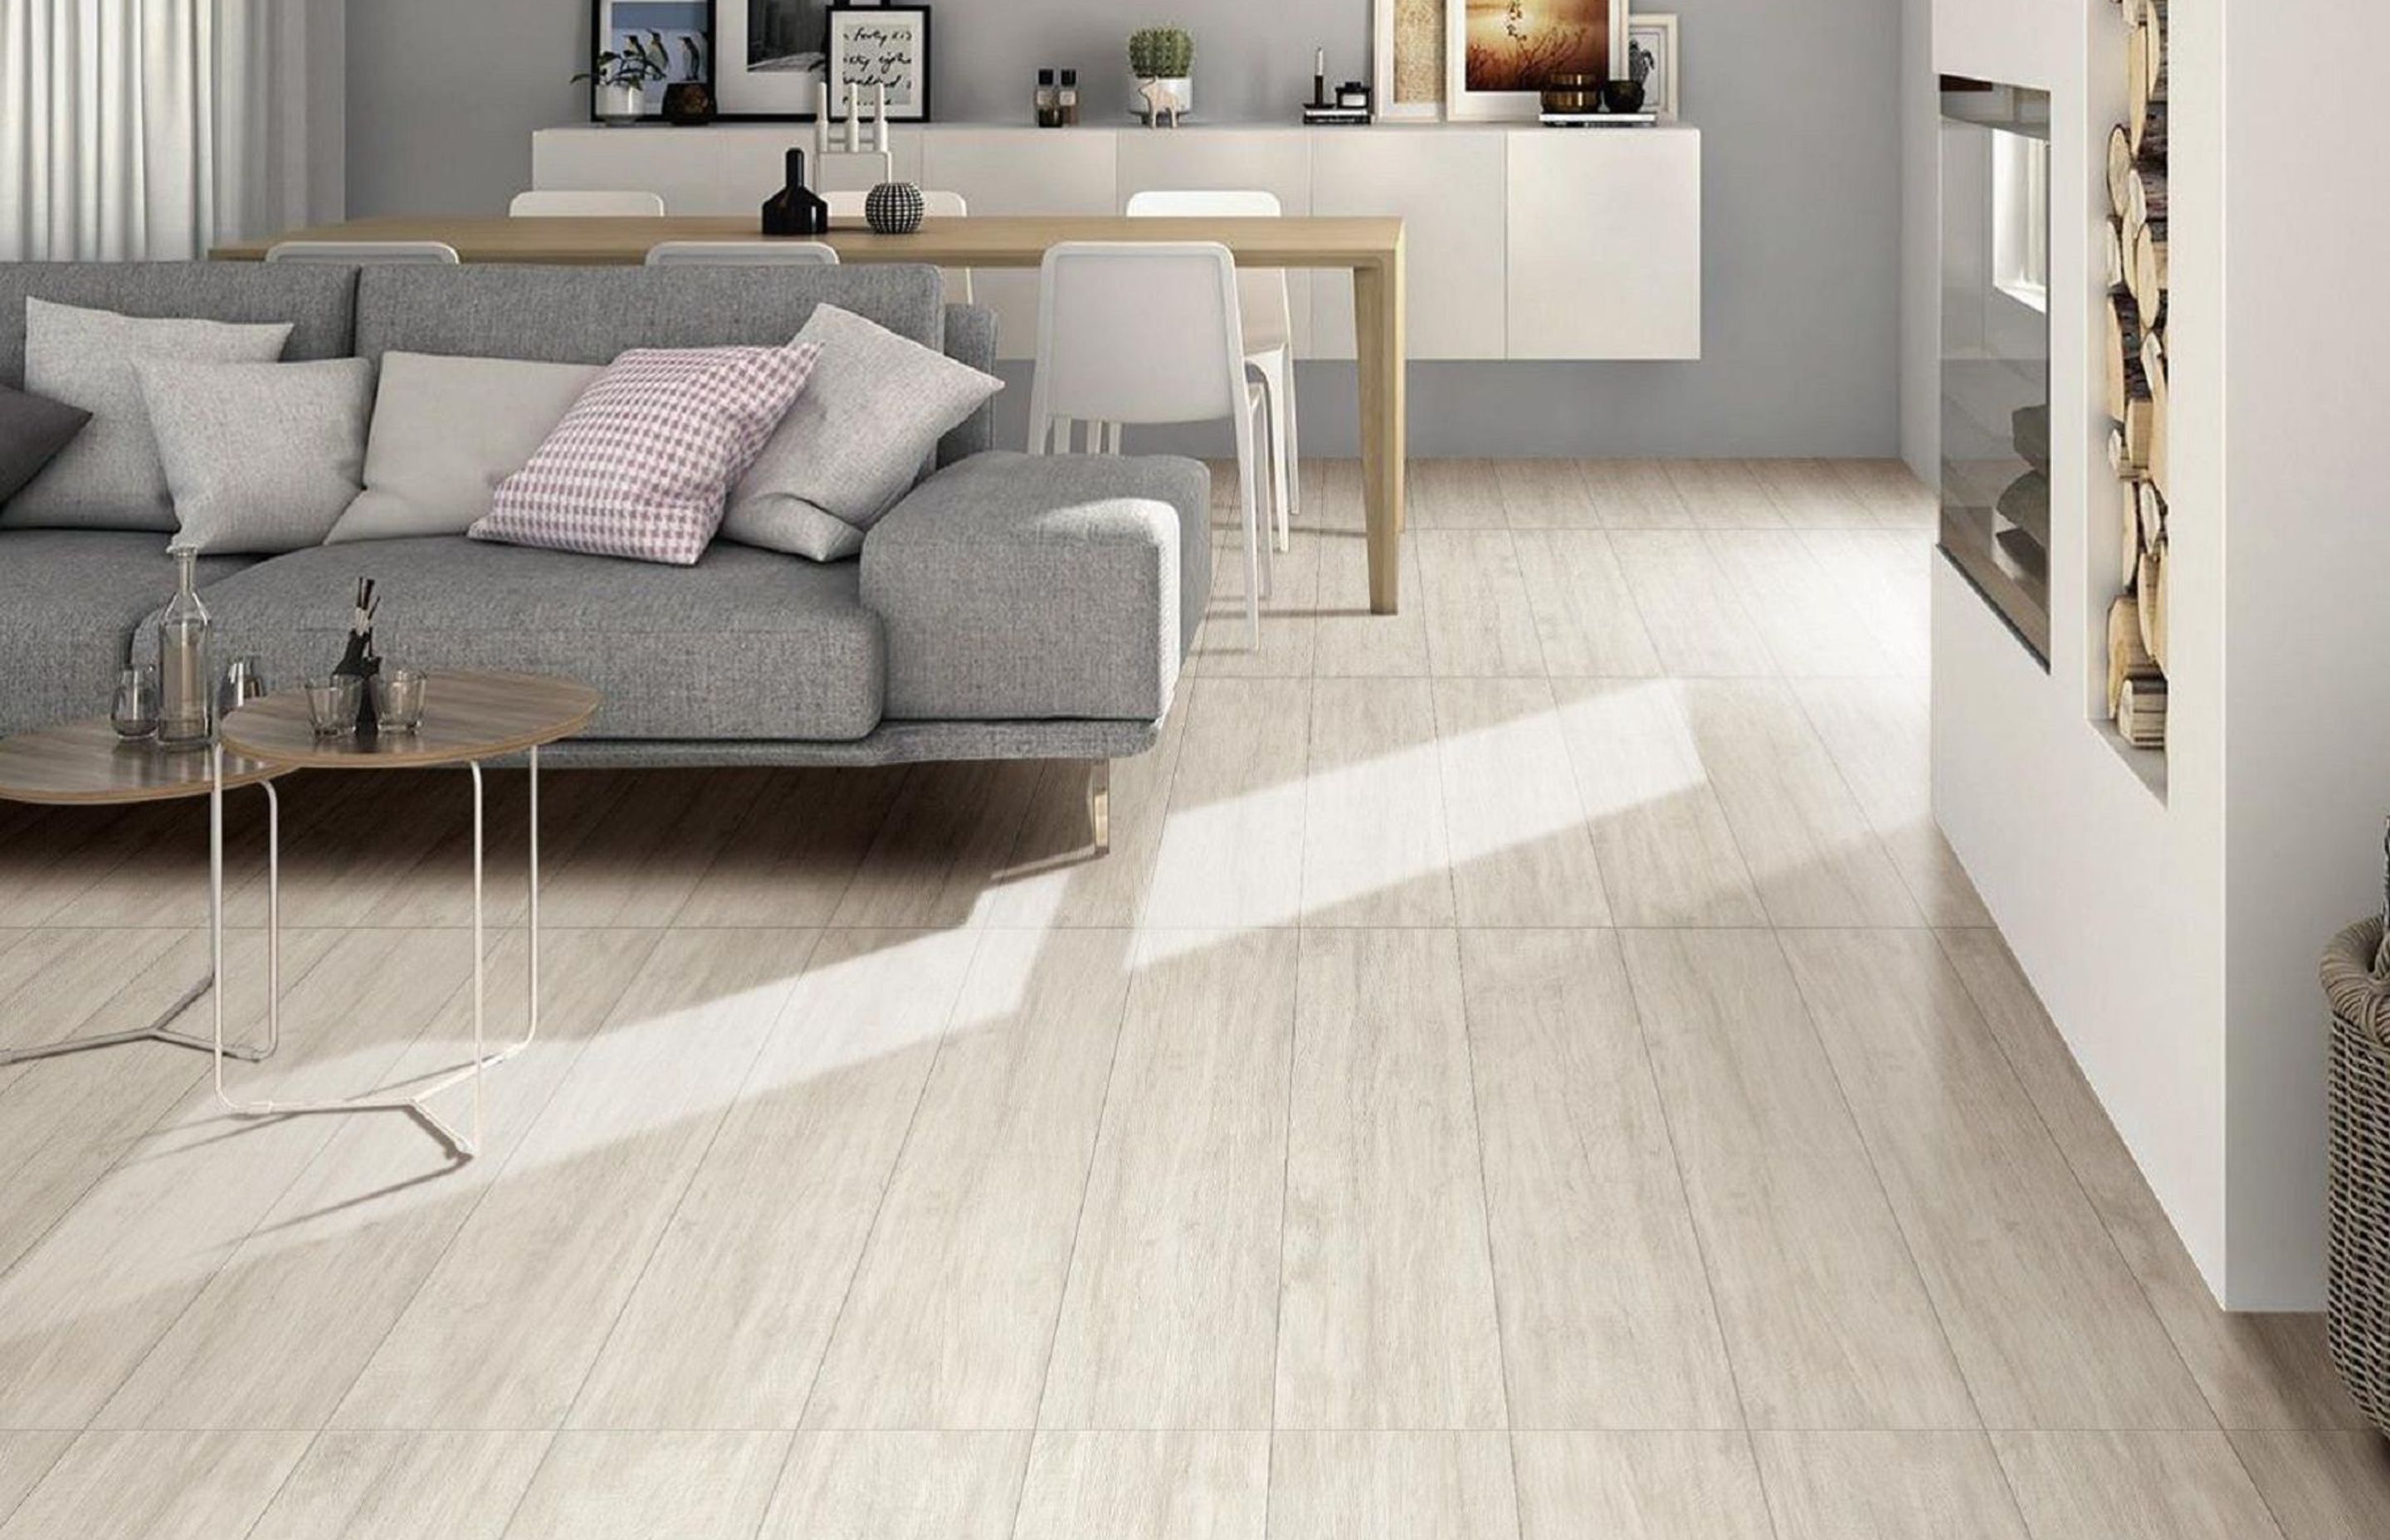 wooden-floor-tile-2-v2.jpg